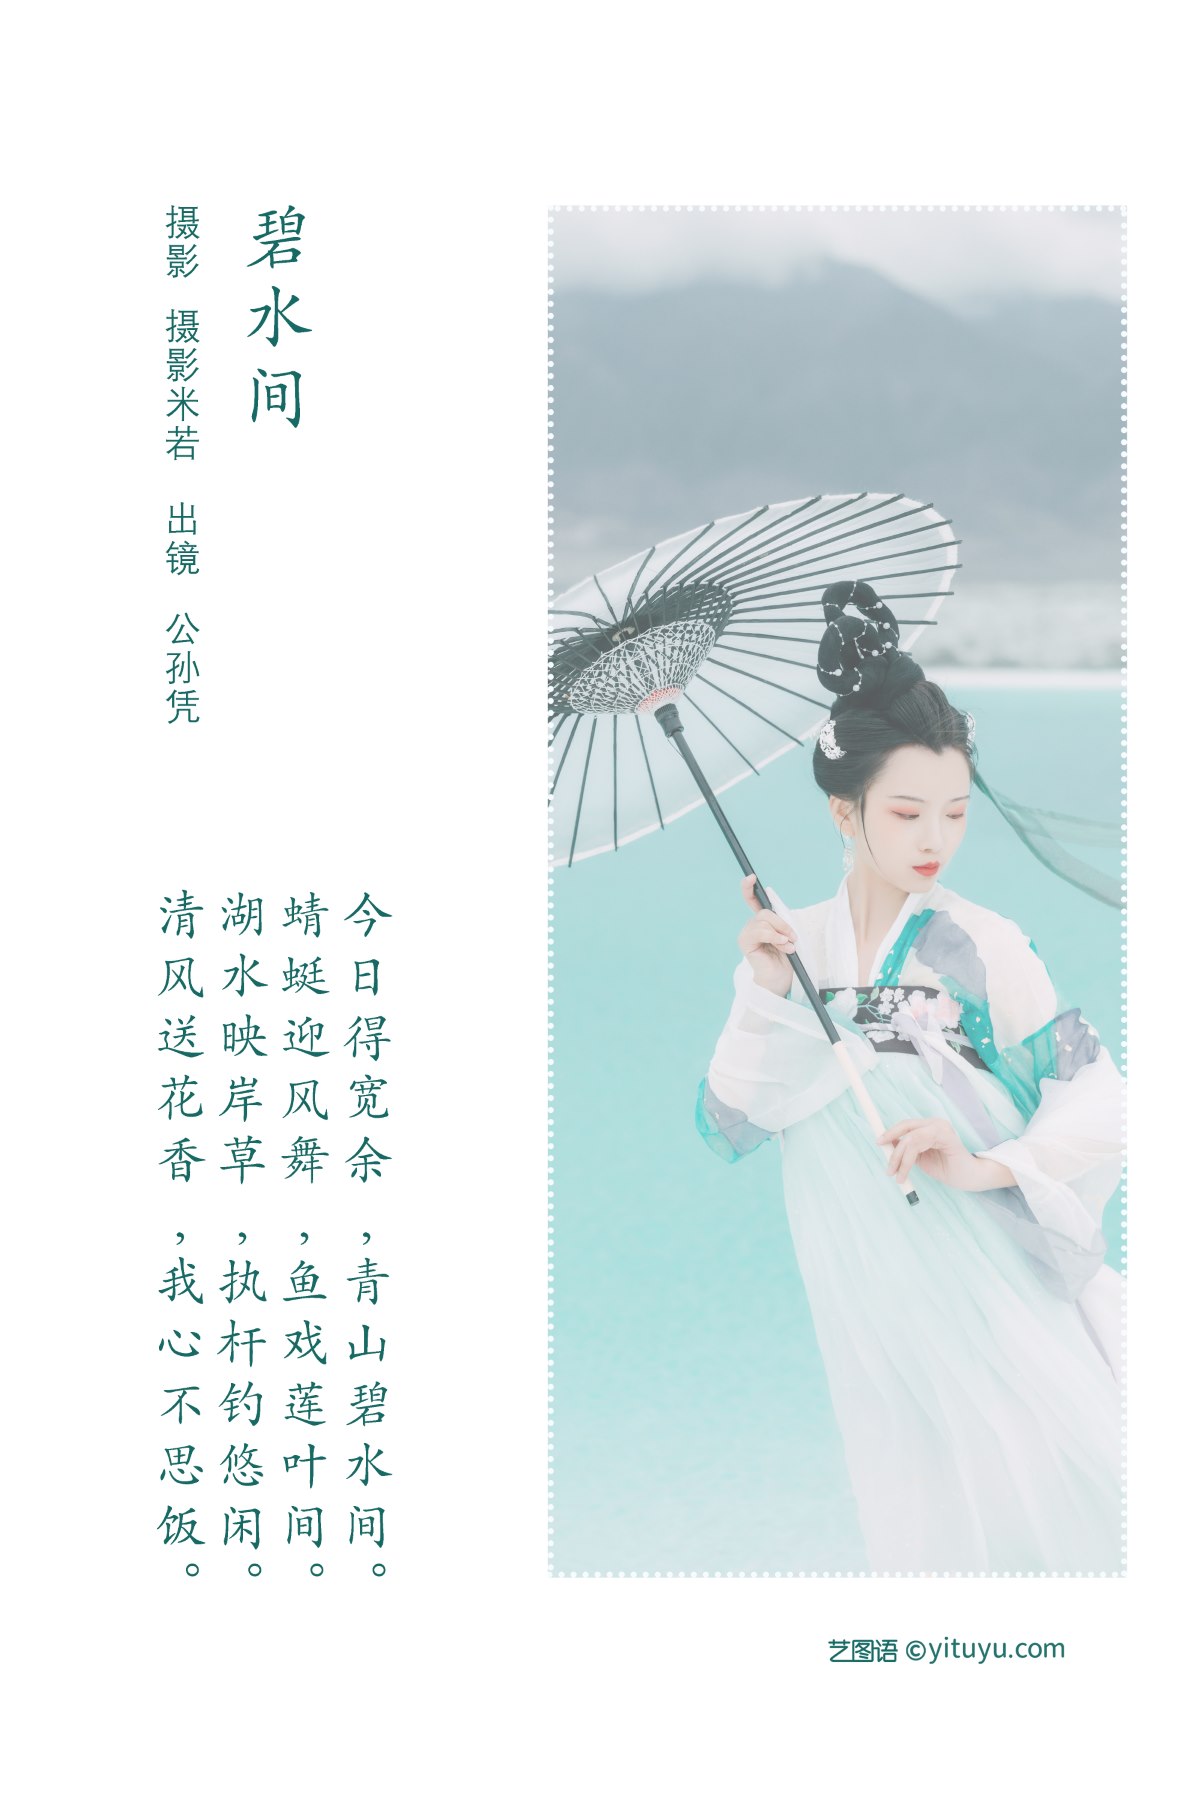 YiTuYu艺图语 Vol 2188 Gong Sun Ping 0001 0917183360.jpg